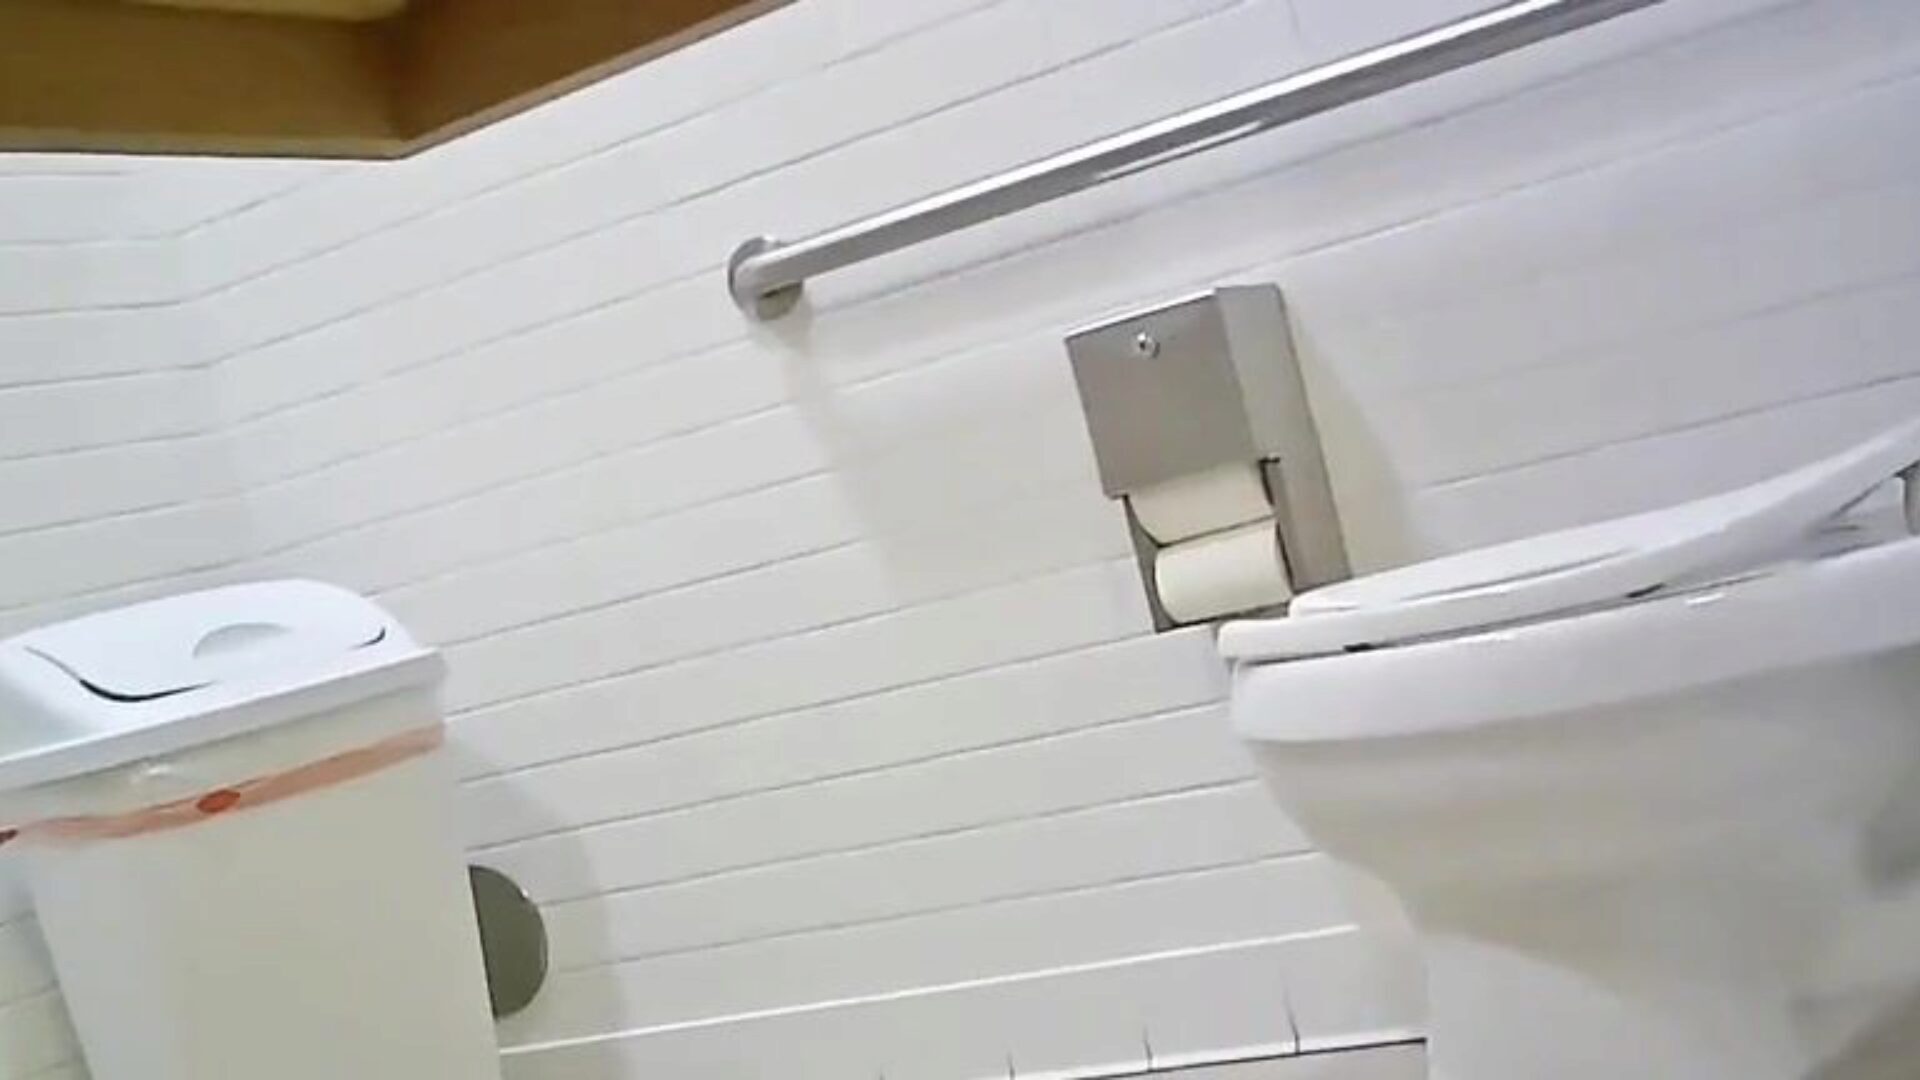 caméra de toilette cachée - fit hotty ideal gazoo regarde celle-ci, dis-moi ce que tu en penses; p '